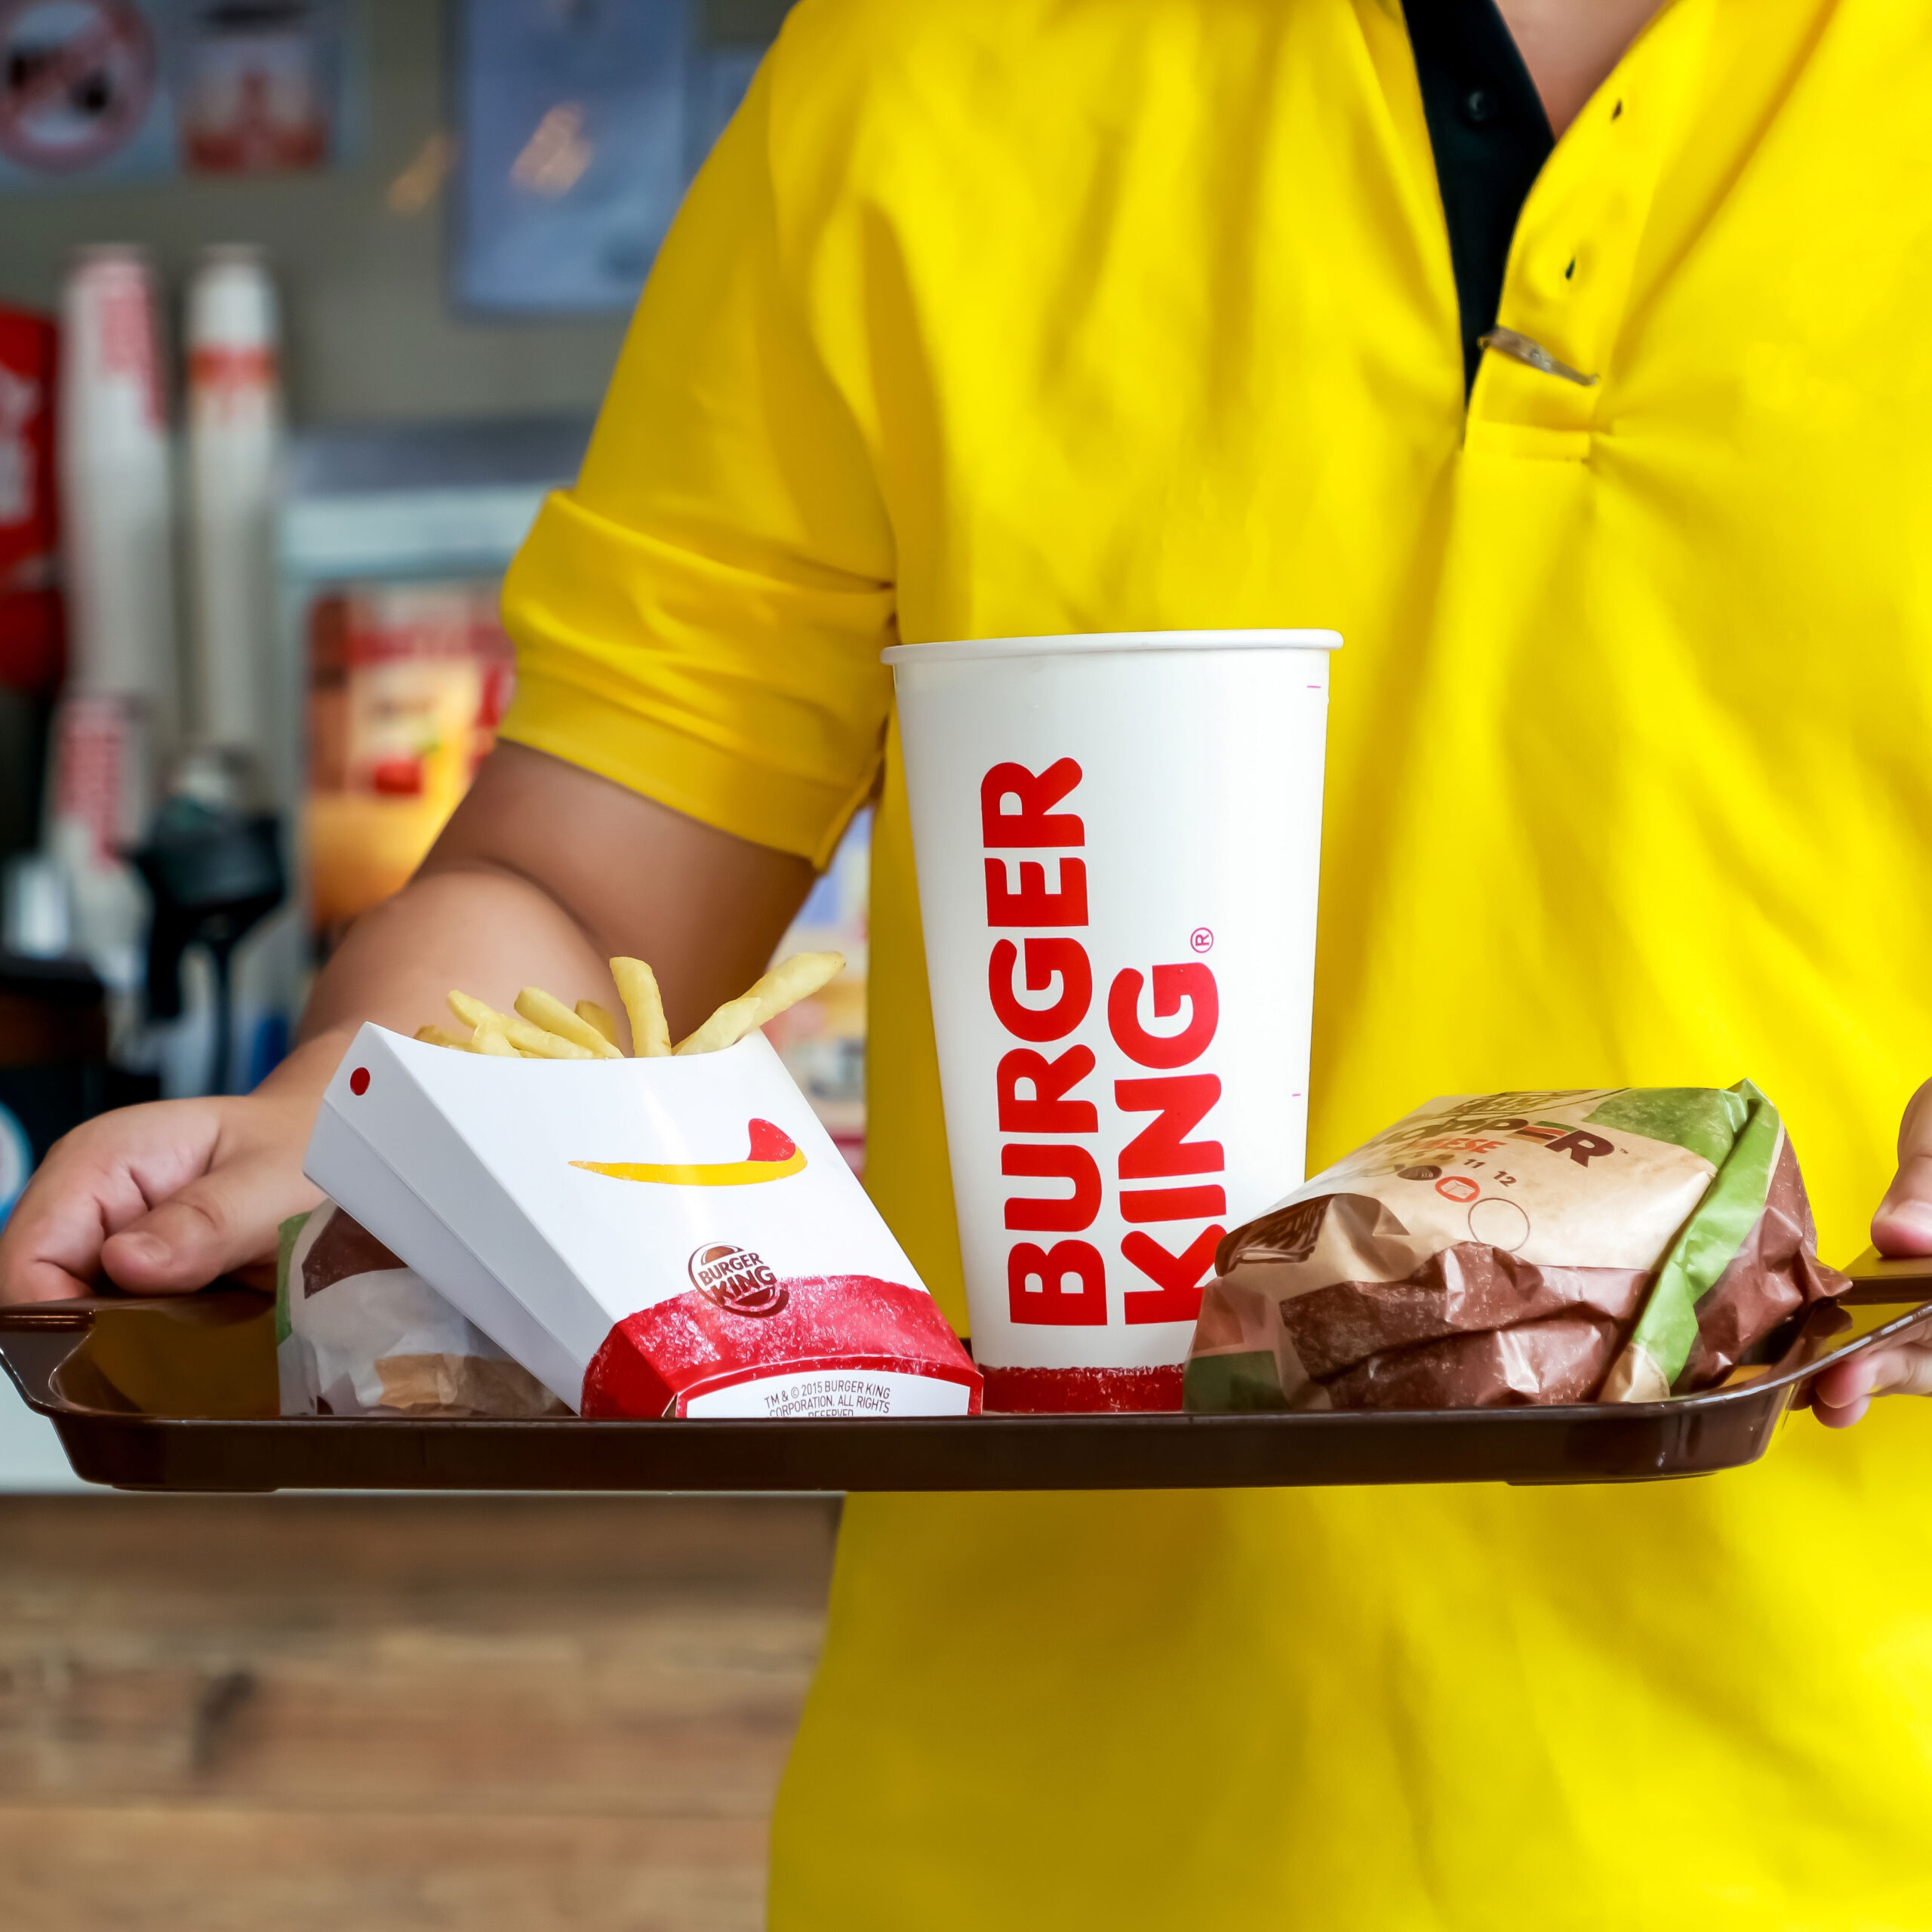 burger king tray with burger, fries, soda